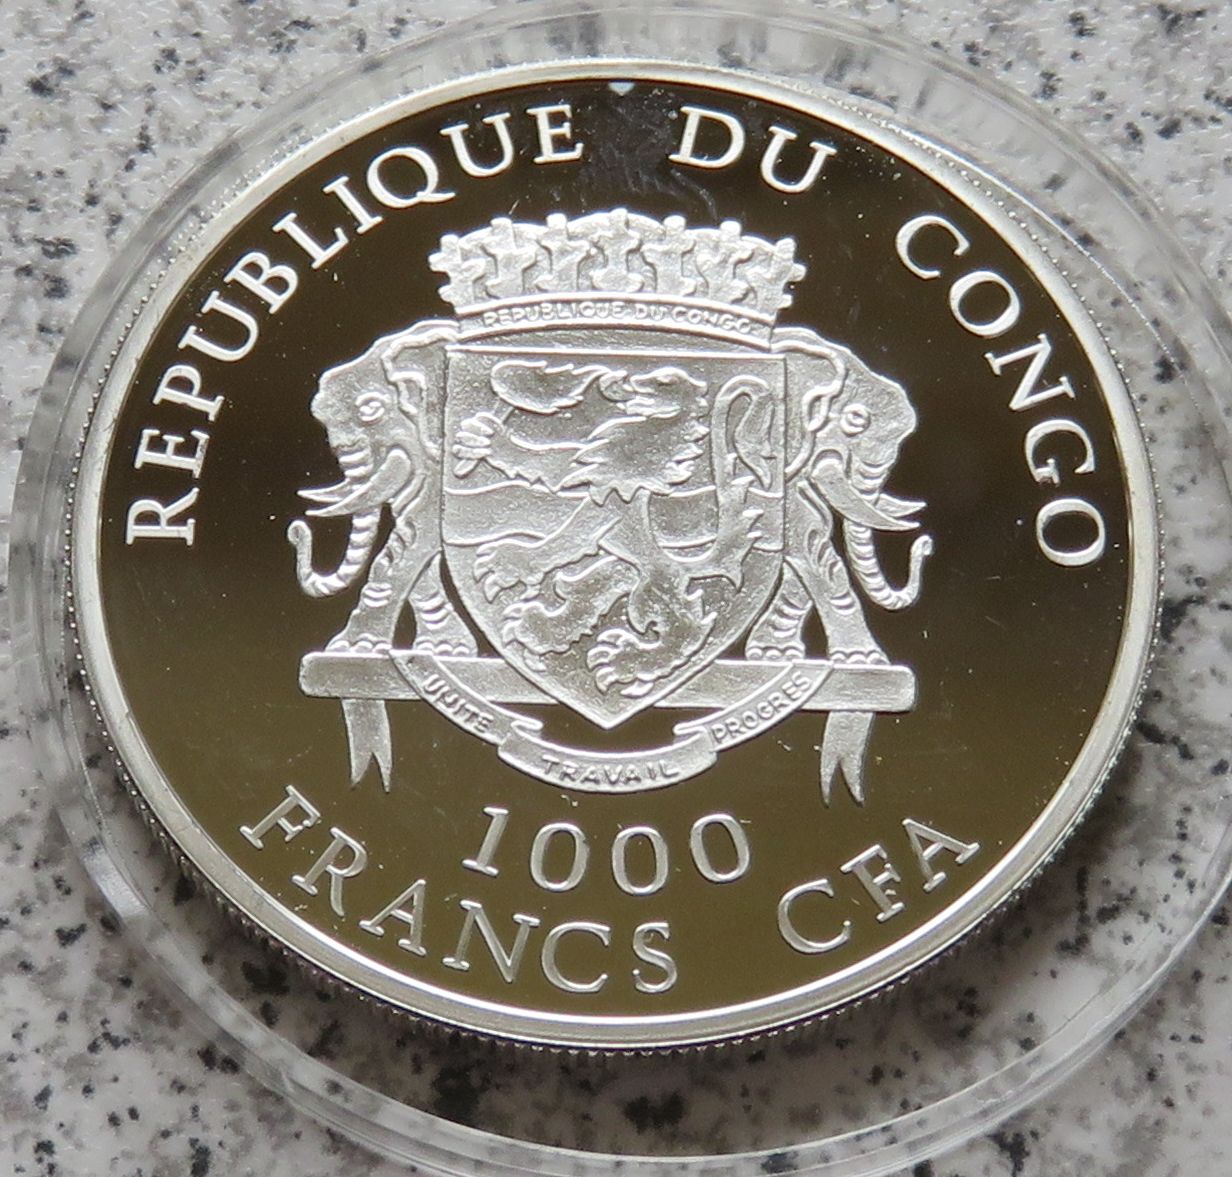  Congo 1000 Francs CFA 2007   